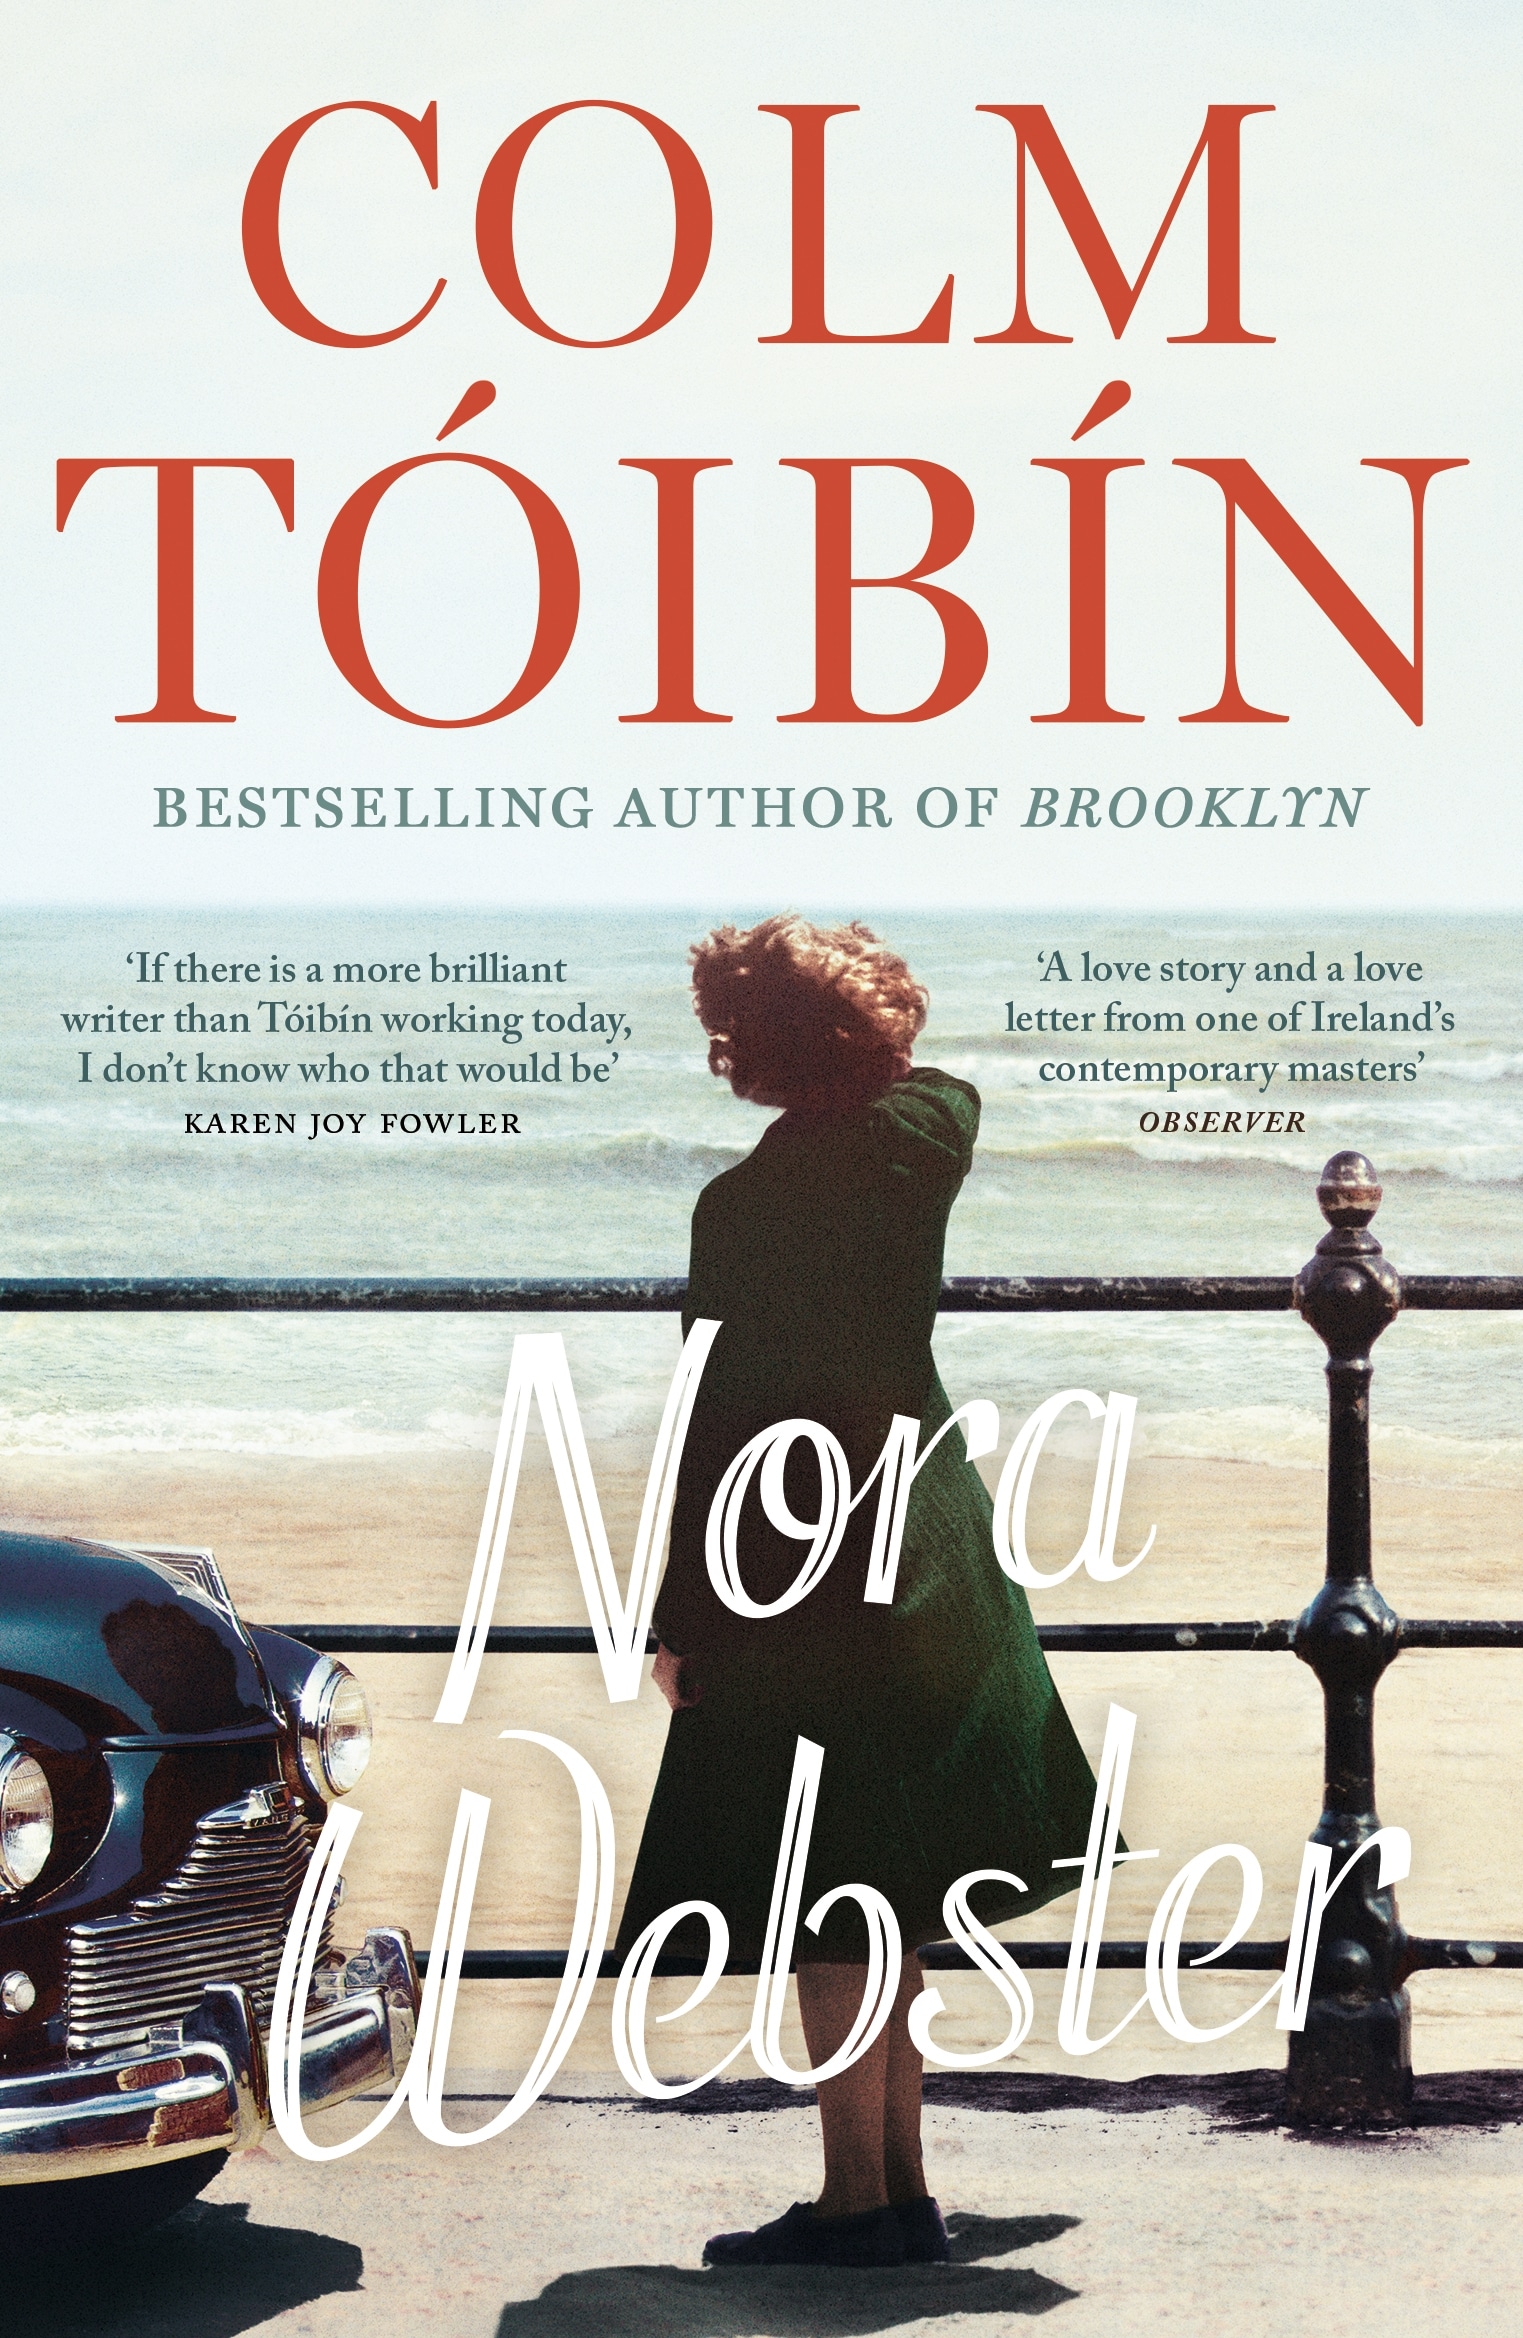 Book “Nora Webster” by Colm Tóibín — January 29, 2015